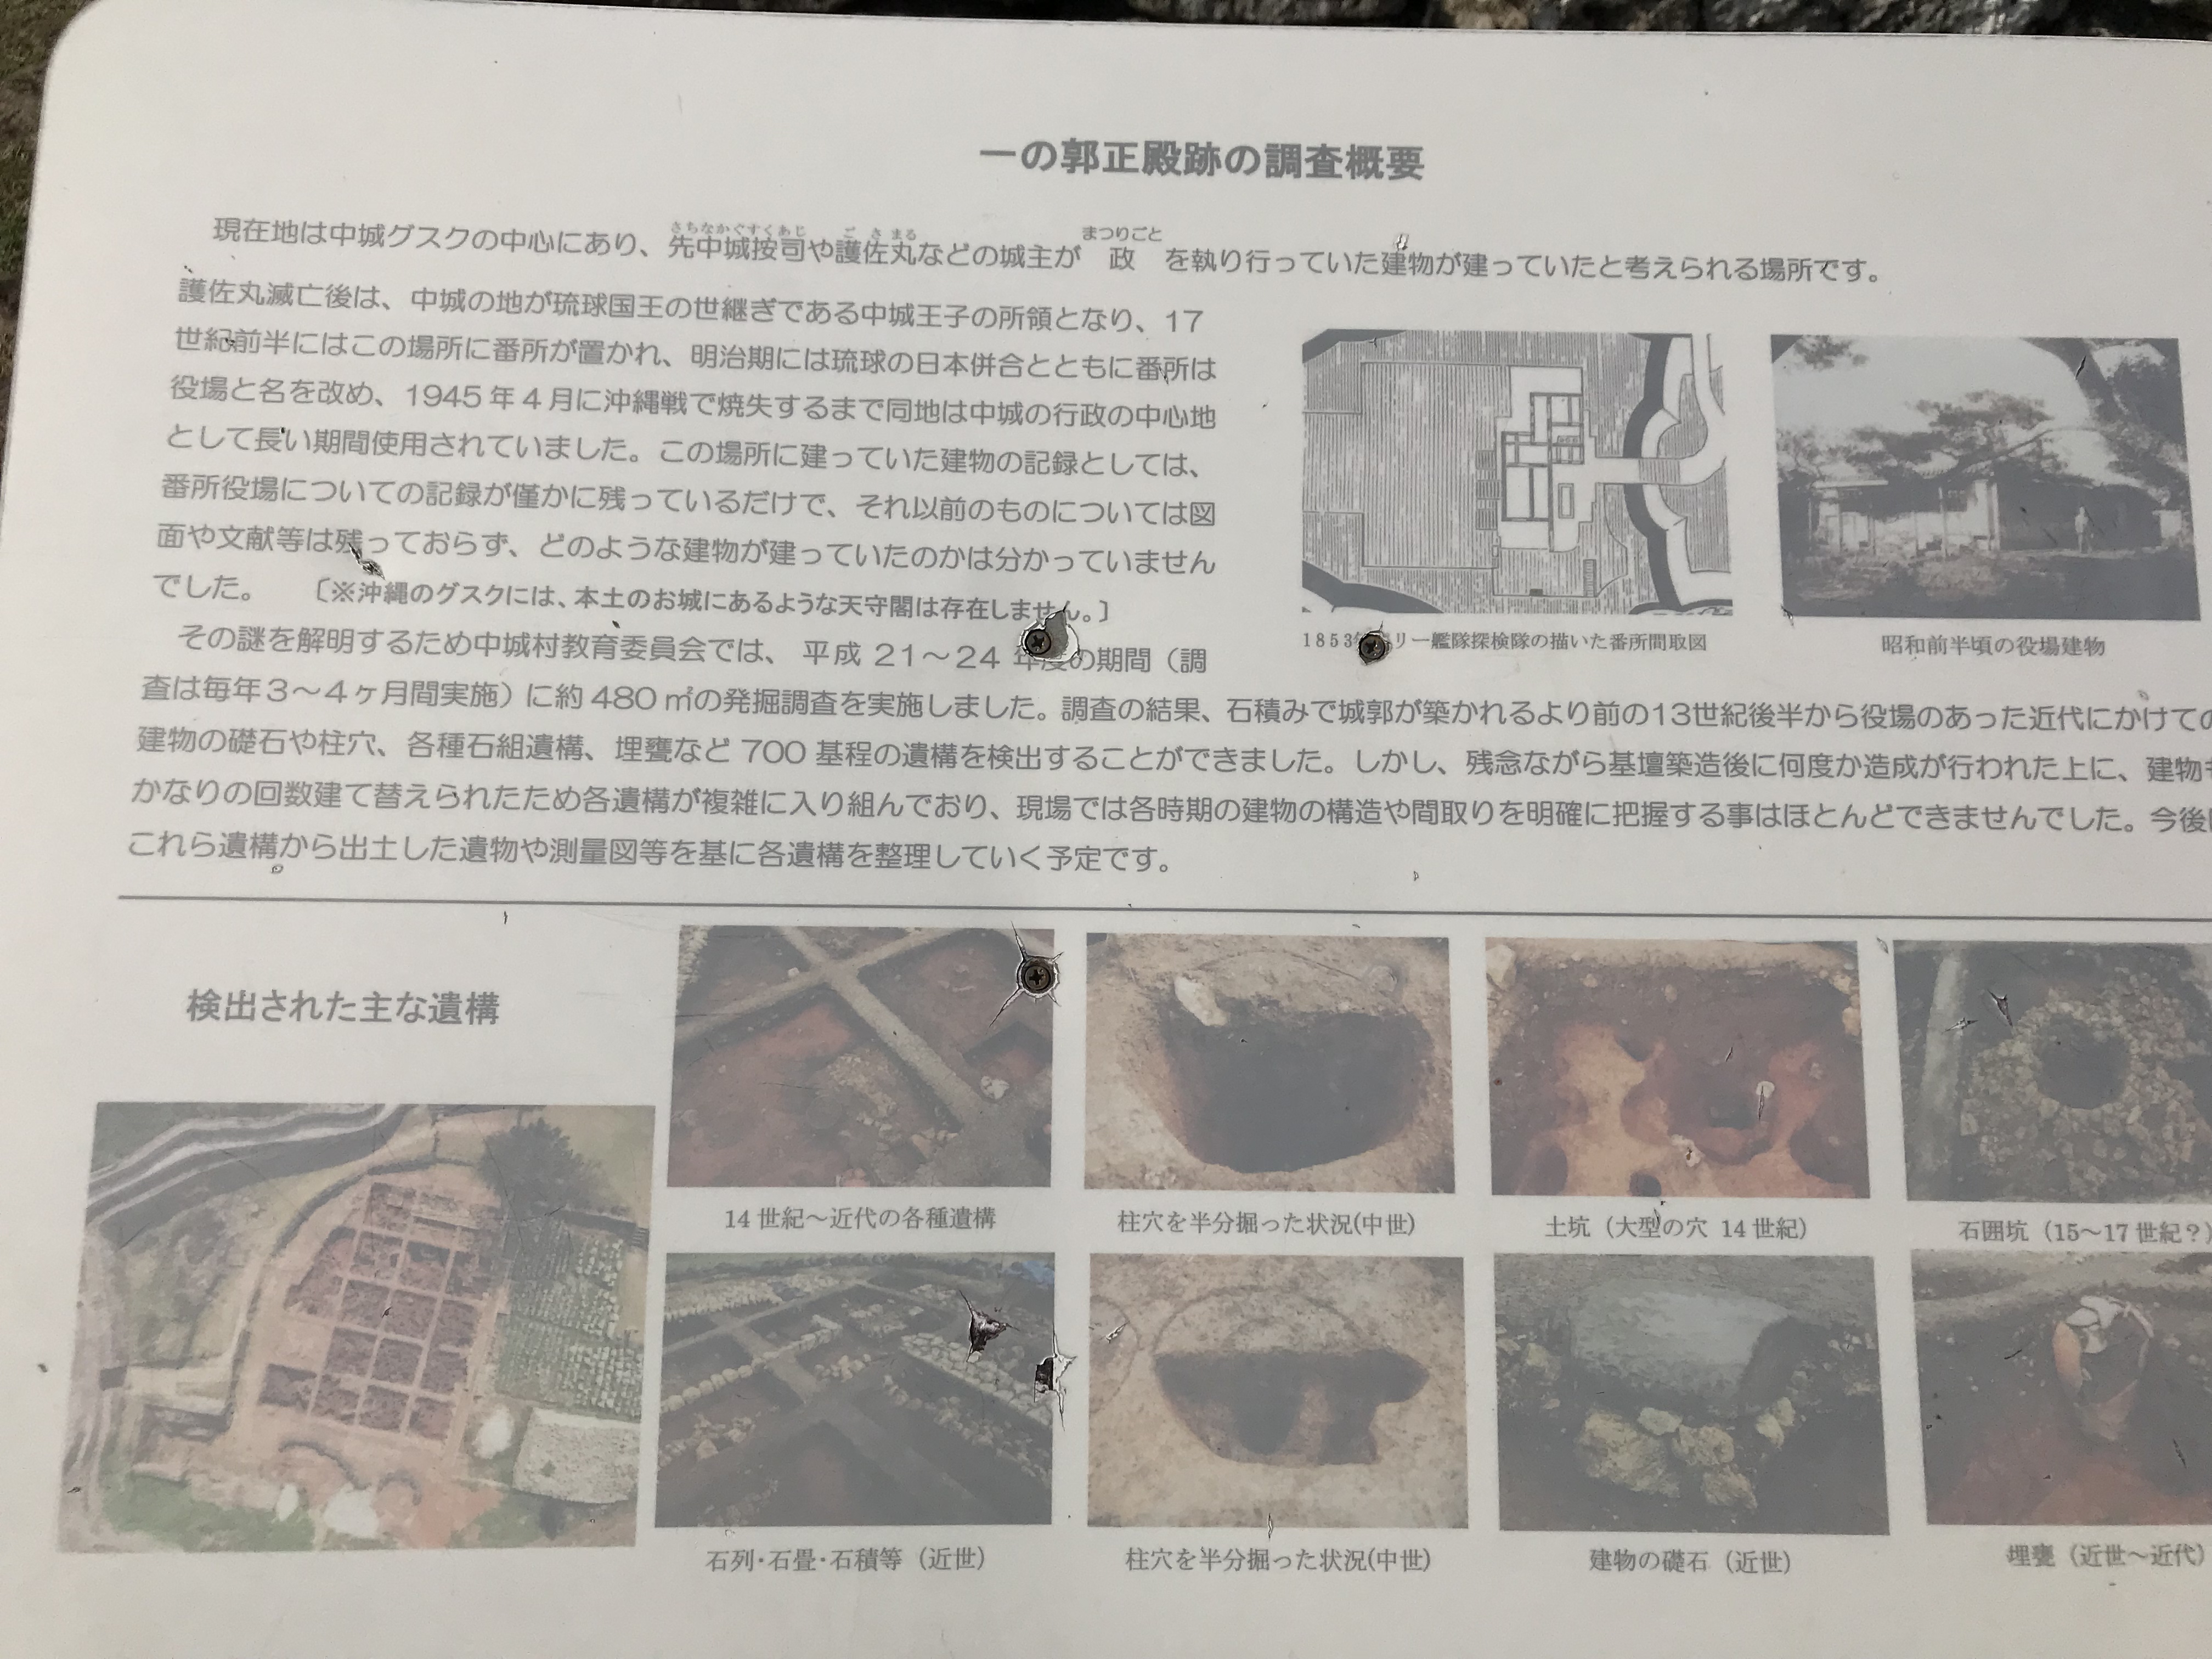 中城城跡の遺跡発掘についての説明掲示板